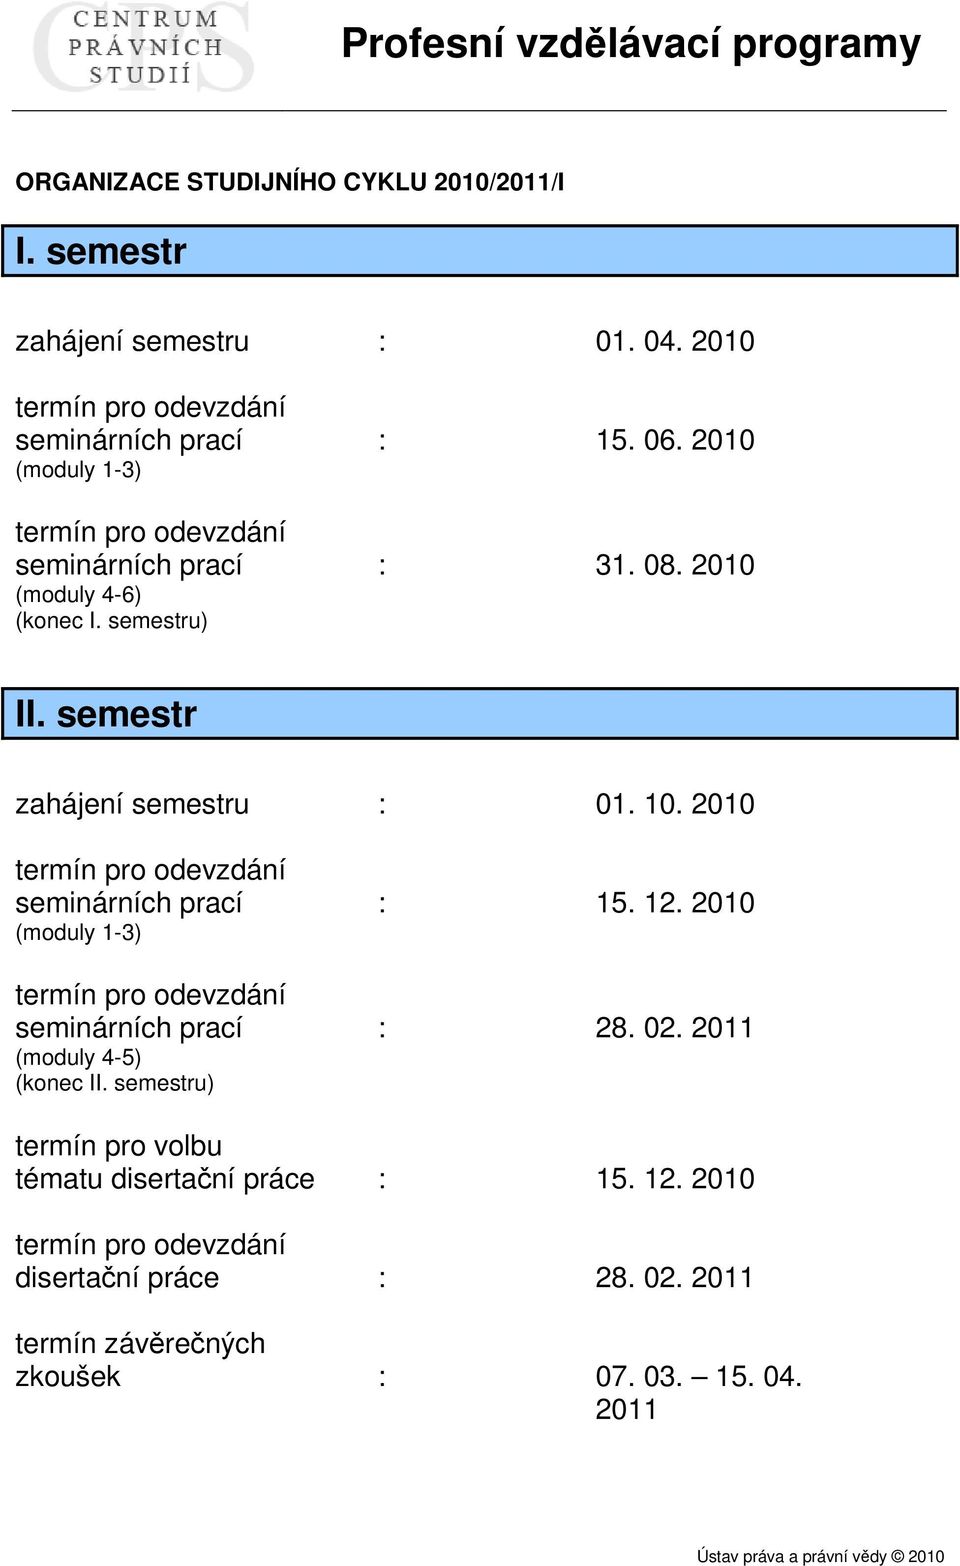 2010 termín pro odevzdání seminárních prací : 15. 12. 2010 (moduly 1-3) termín pro odevzdání seminárních prací : 28. 02. 2011 (moduly 4-5) (konec II.